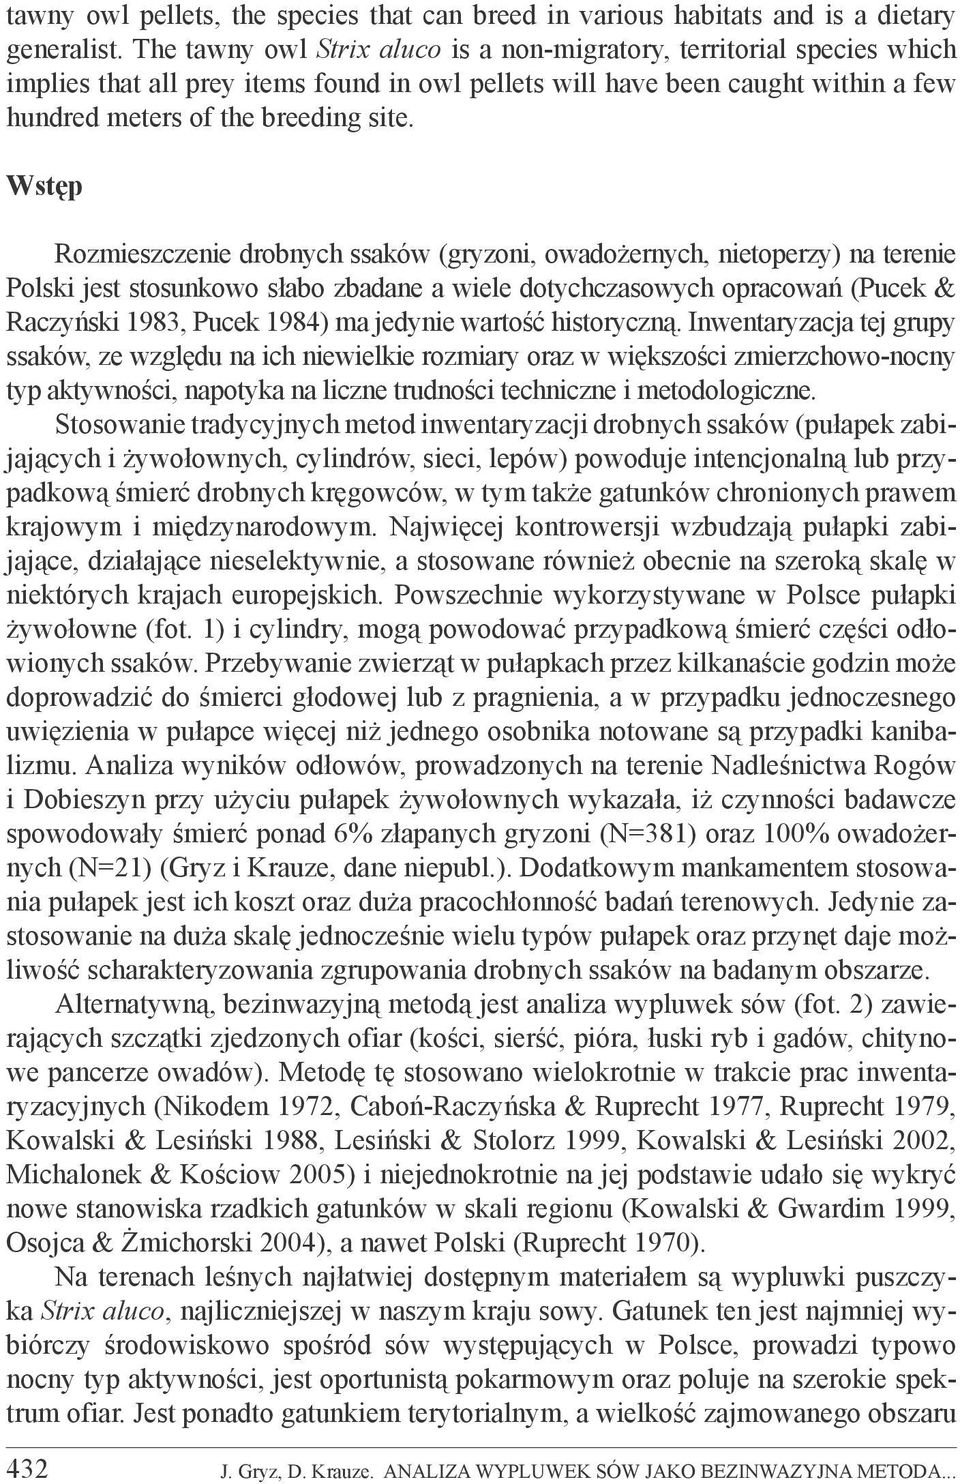 Wstęp Rozmieszczenie drobnych ssaków (gryzoni, owadożernych, nietoperzy) na terenie Polski jest stosunkowo słabo zbadane a wiele dotychczasowych opracowań (Pucek & Raczyński 1983, Pucek 1984) ma